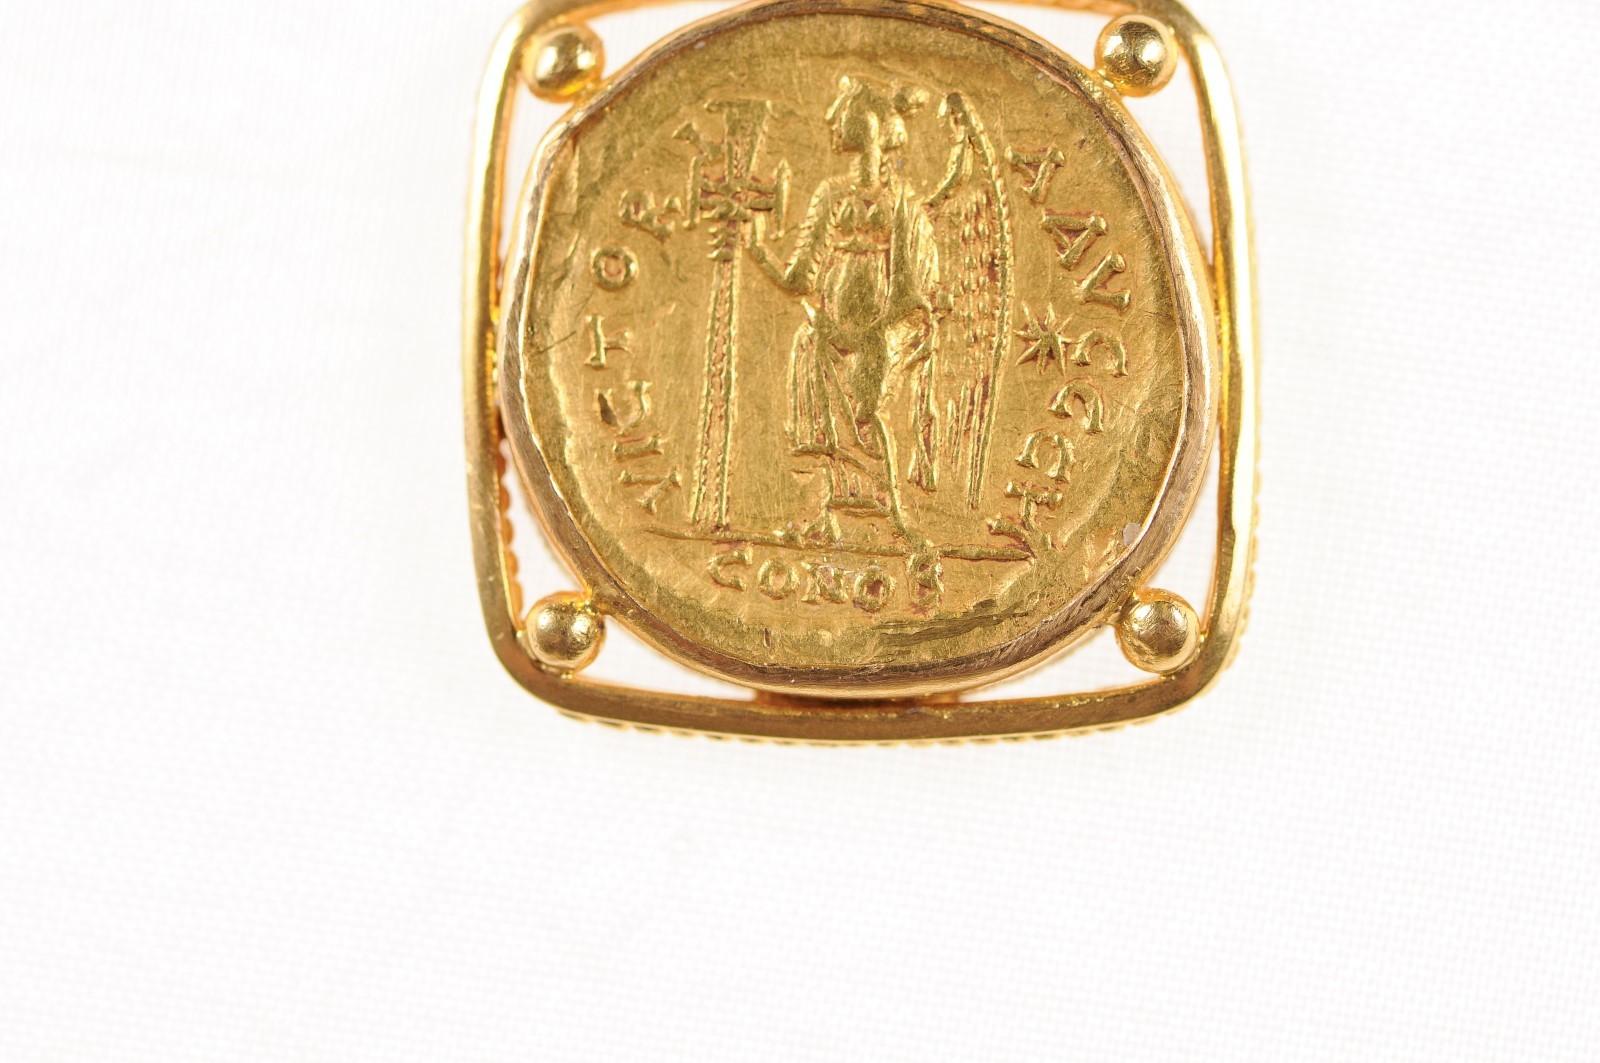 Women's or Men's Zeno 2nd Reign AV Gold Solidus Pendant (pendant only) For Sale